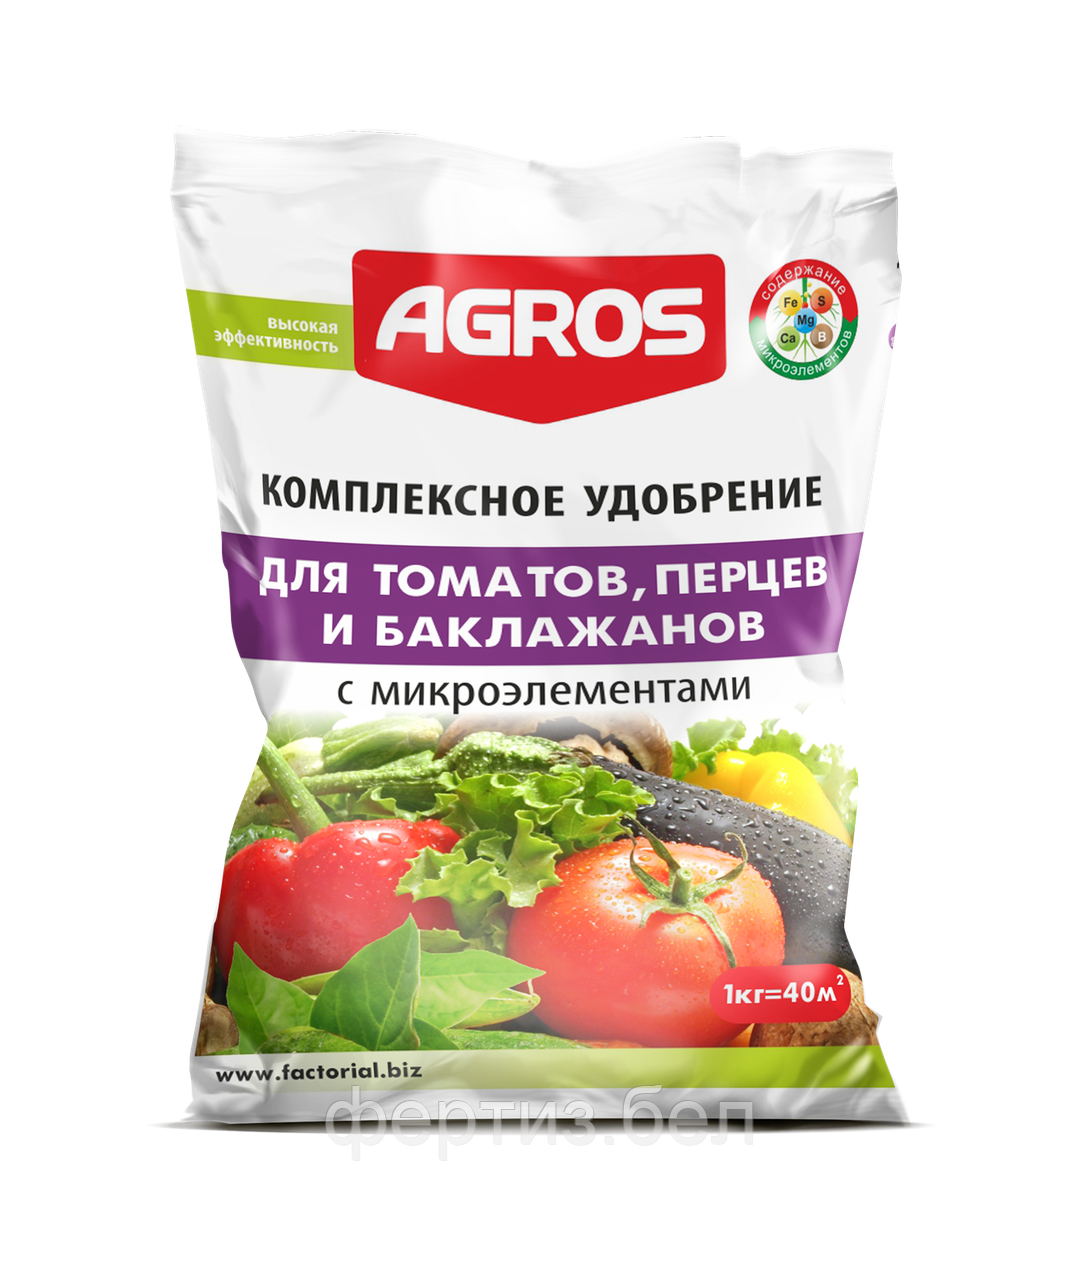 Комплексное удобрение для томатов, перцев и баклажанов с микроэлементами 1 кг.